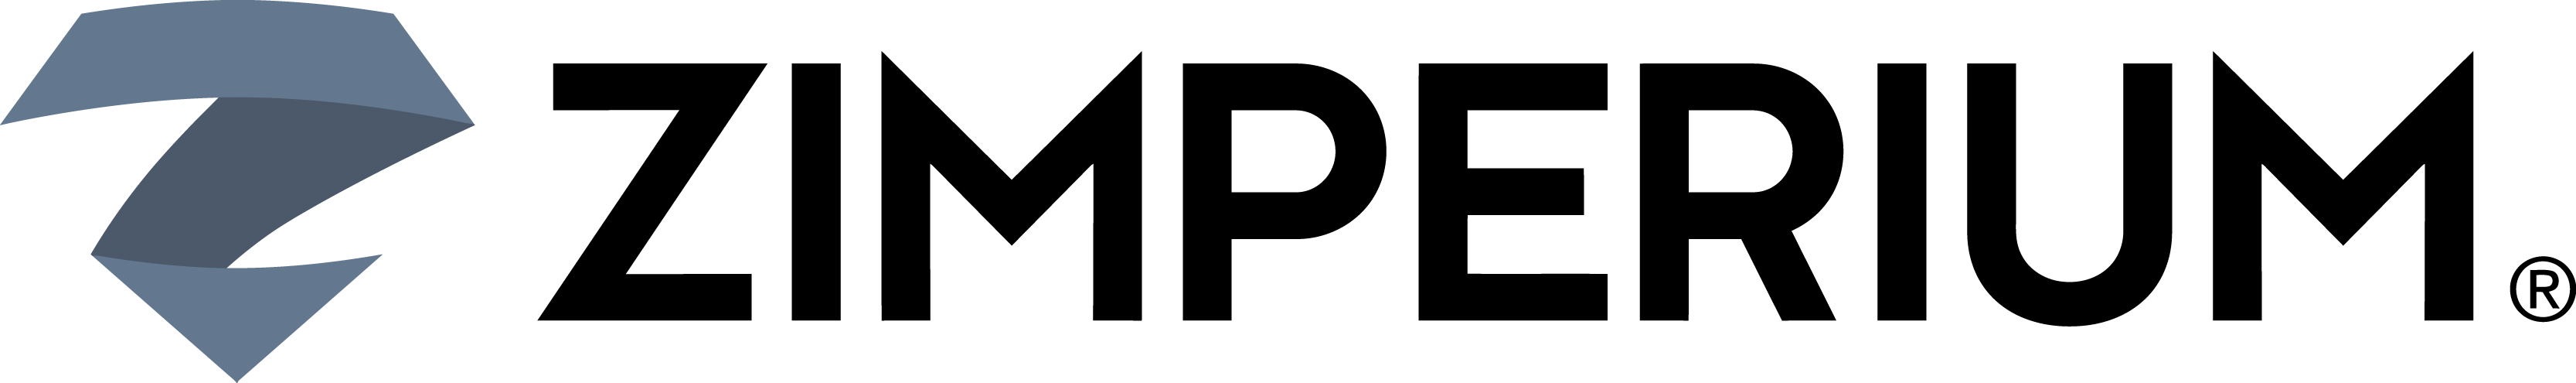 ZIMPERIUM logo